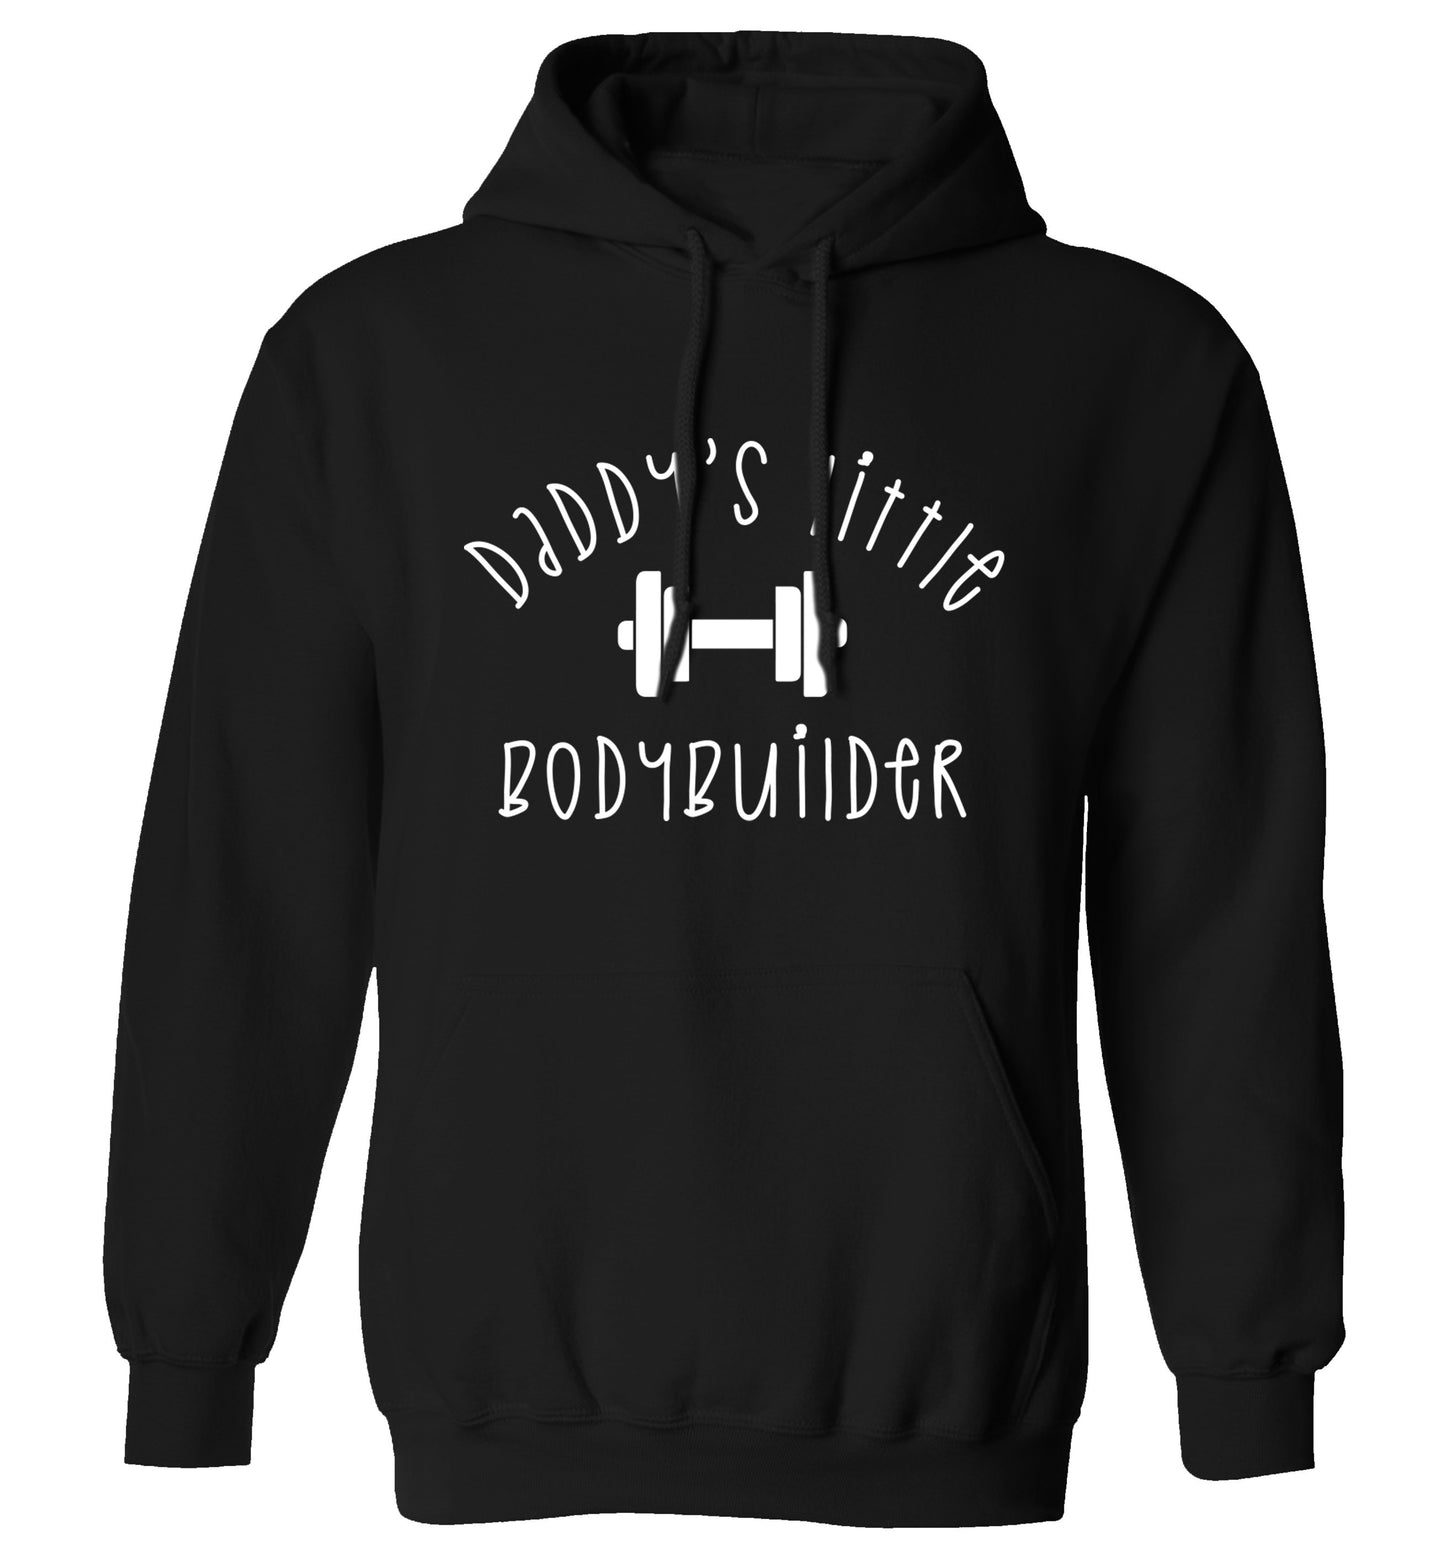 Daddy's little bodybuilder adults unisex black hoodie 2XL